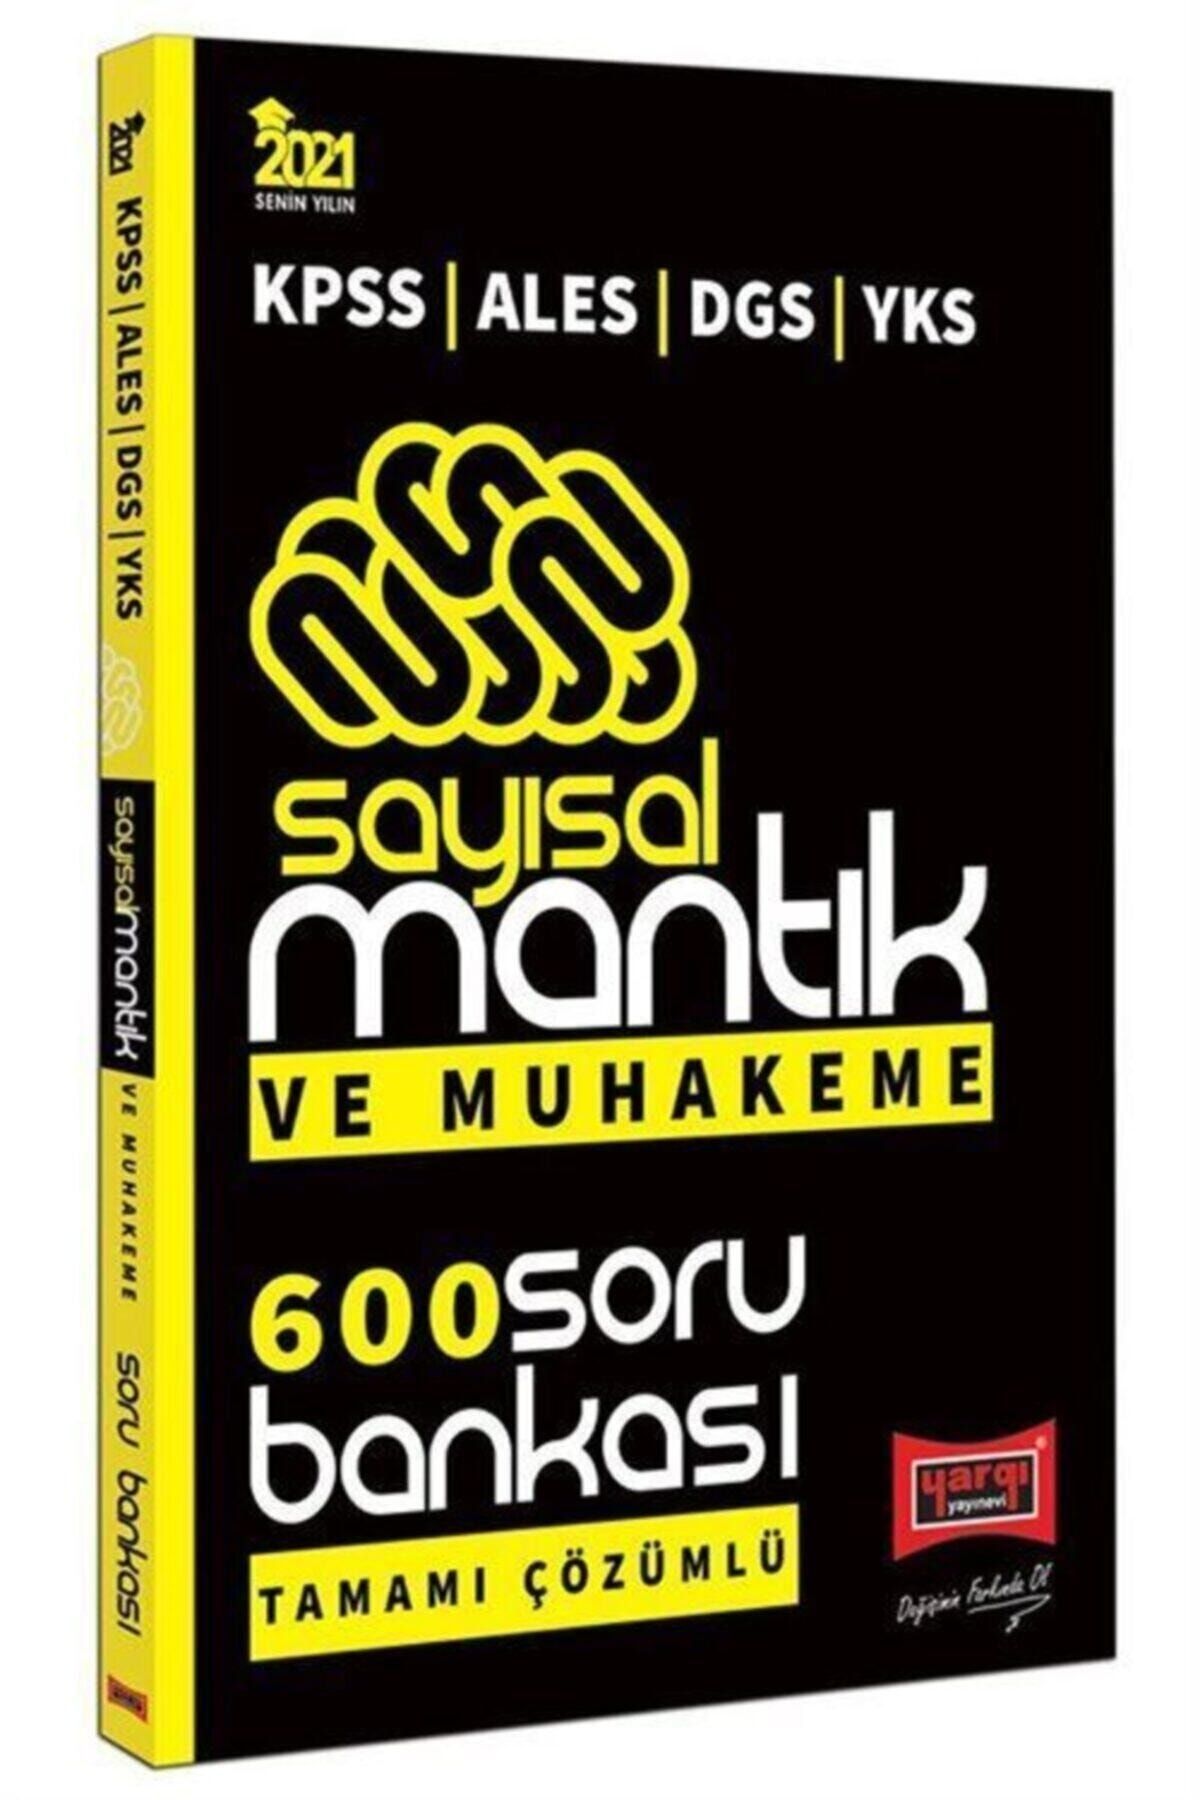 Yargı Yayınevi 2021 Kpss Ales Dgs Yks Sayısal Mantık Ve Muhakeme Tamamı Çözümlü 600 Soru Bankası